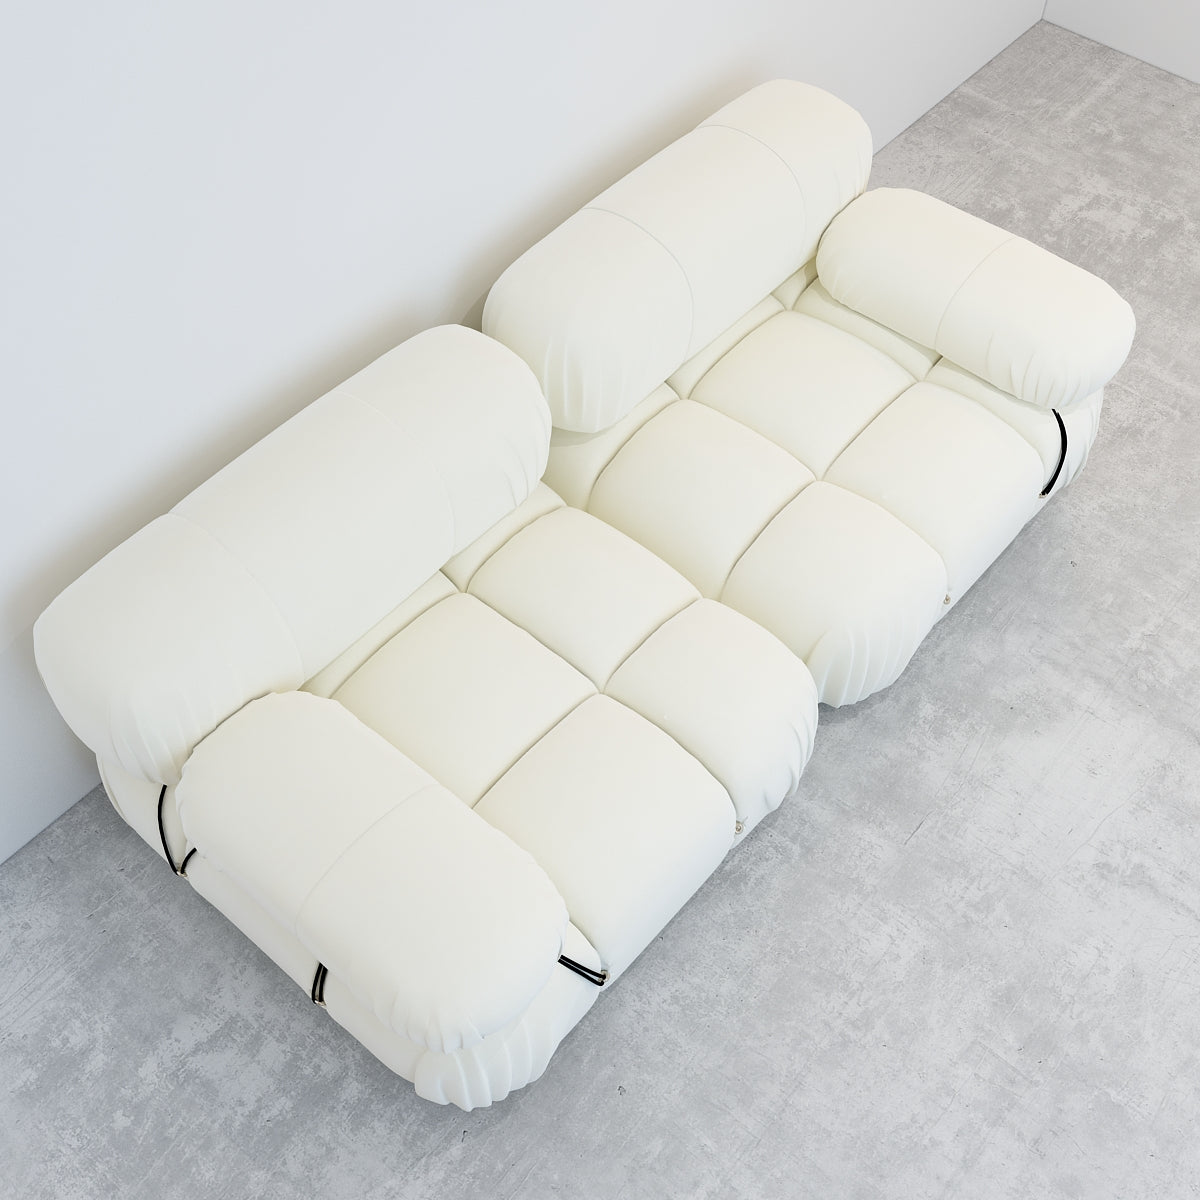 JANNAHSTUDIOS CAMILLE Modular [Mario Bellini] Designer Inspired Camaleonda Sofa (2-Seater Sofa)